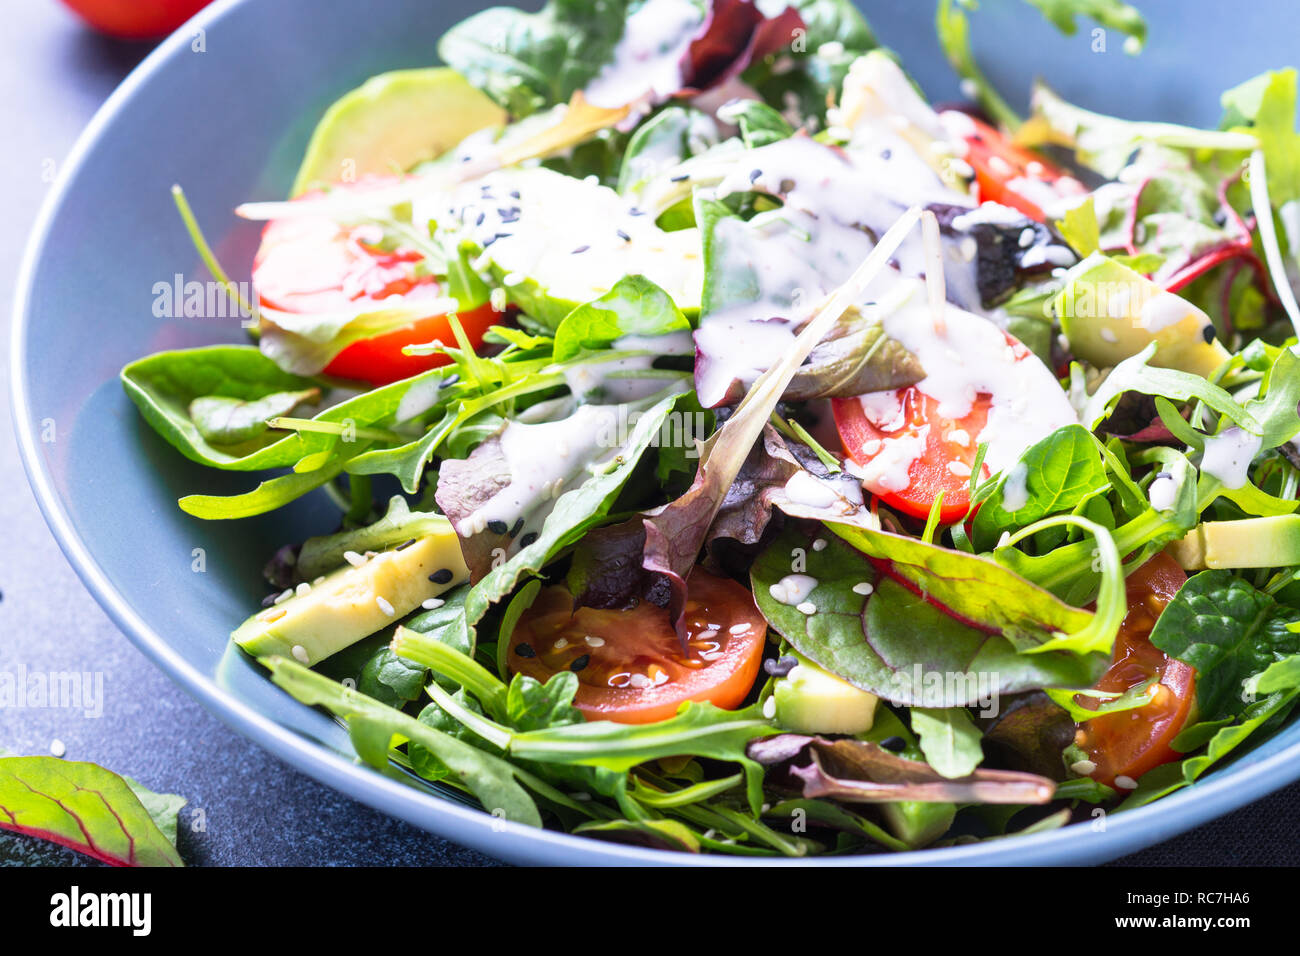 Frischer Salat mit Joghurt Dressing. Stockfoto